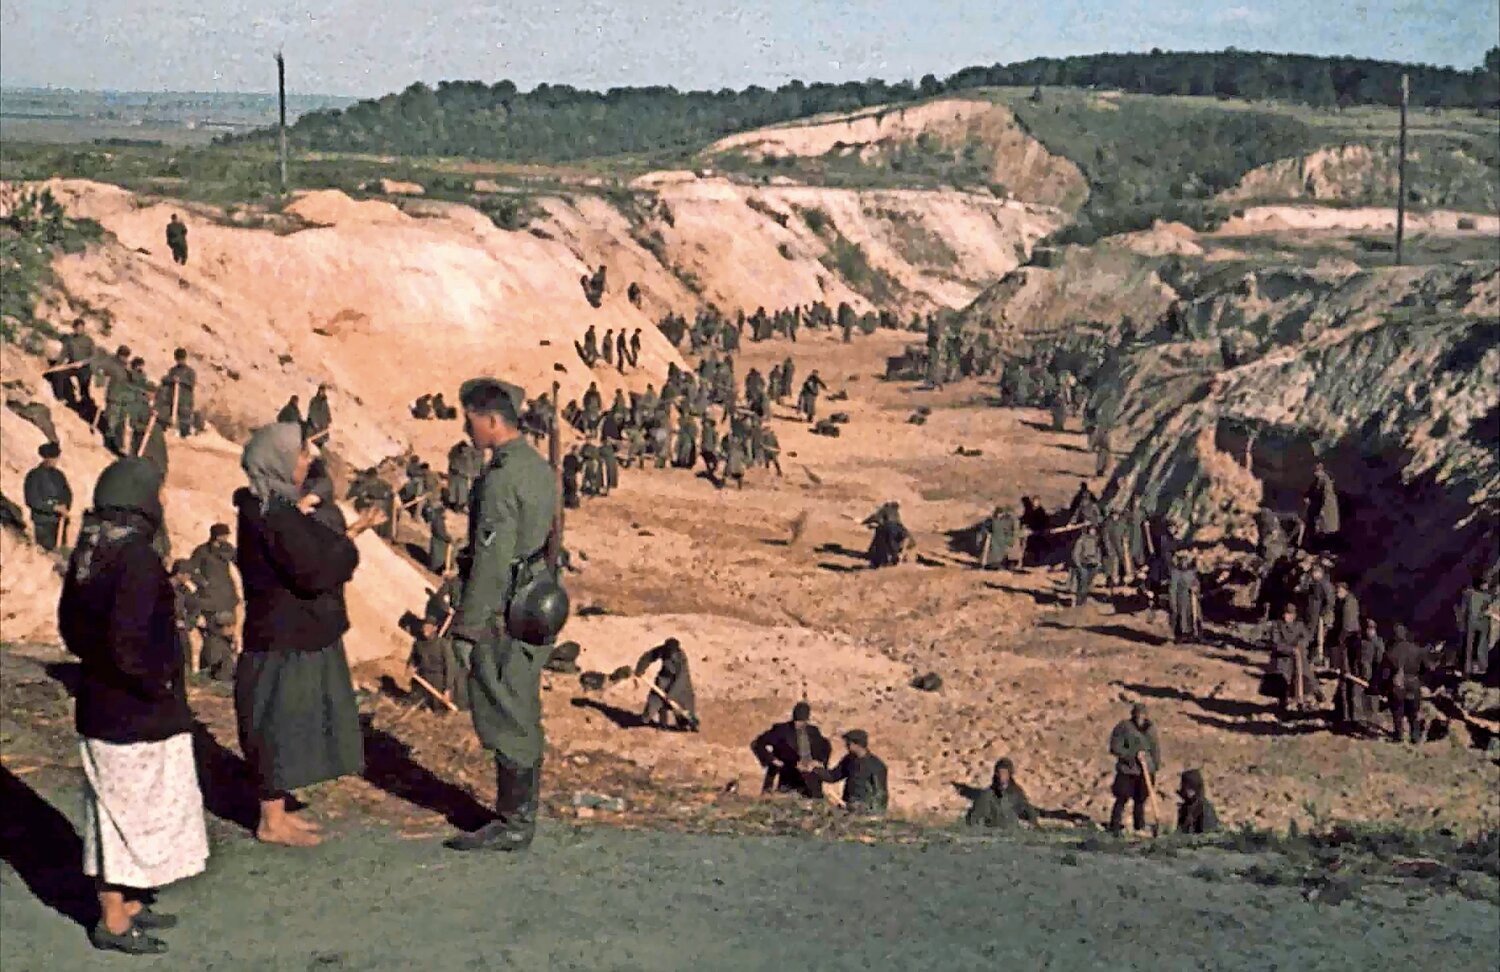 Soviet POWs cover a mass grave after Babi Yar massacre days earlier, Oct. 1, 1941.